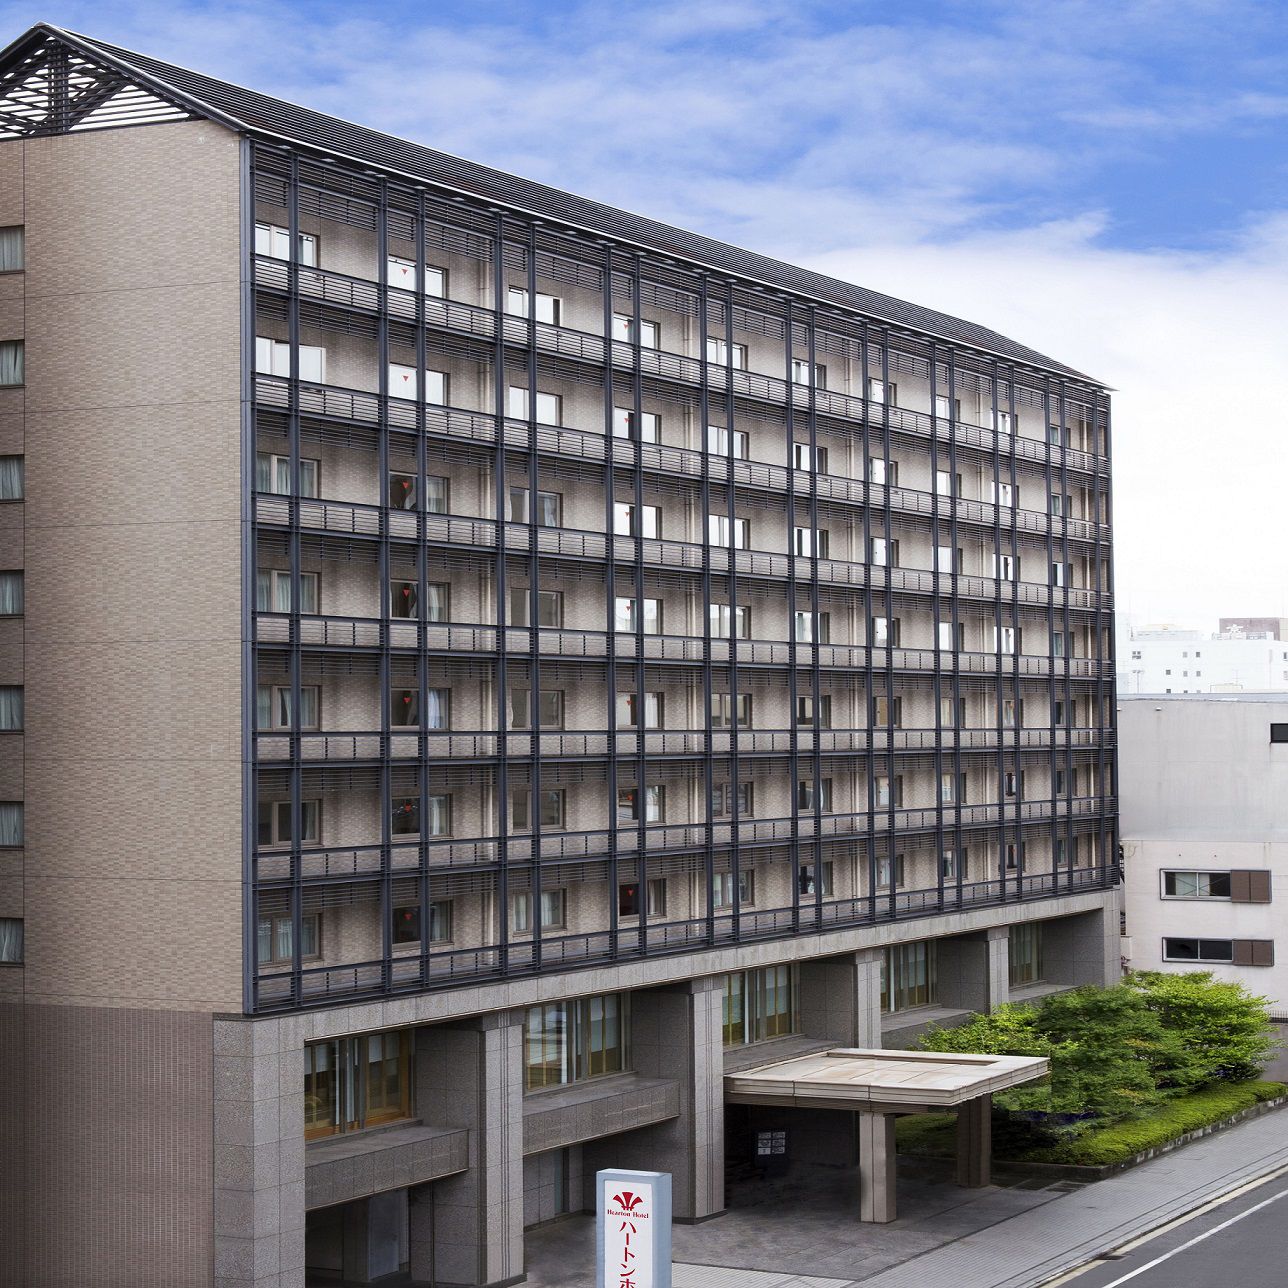 ハートンホテル京都